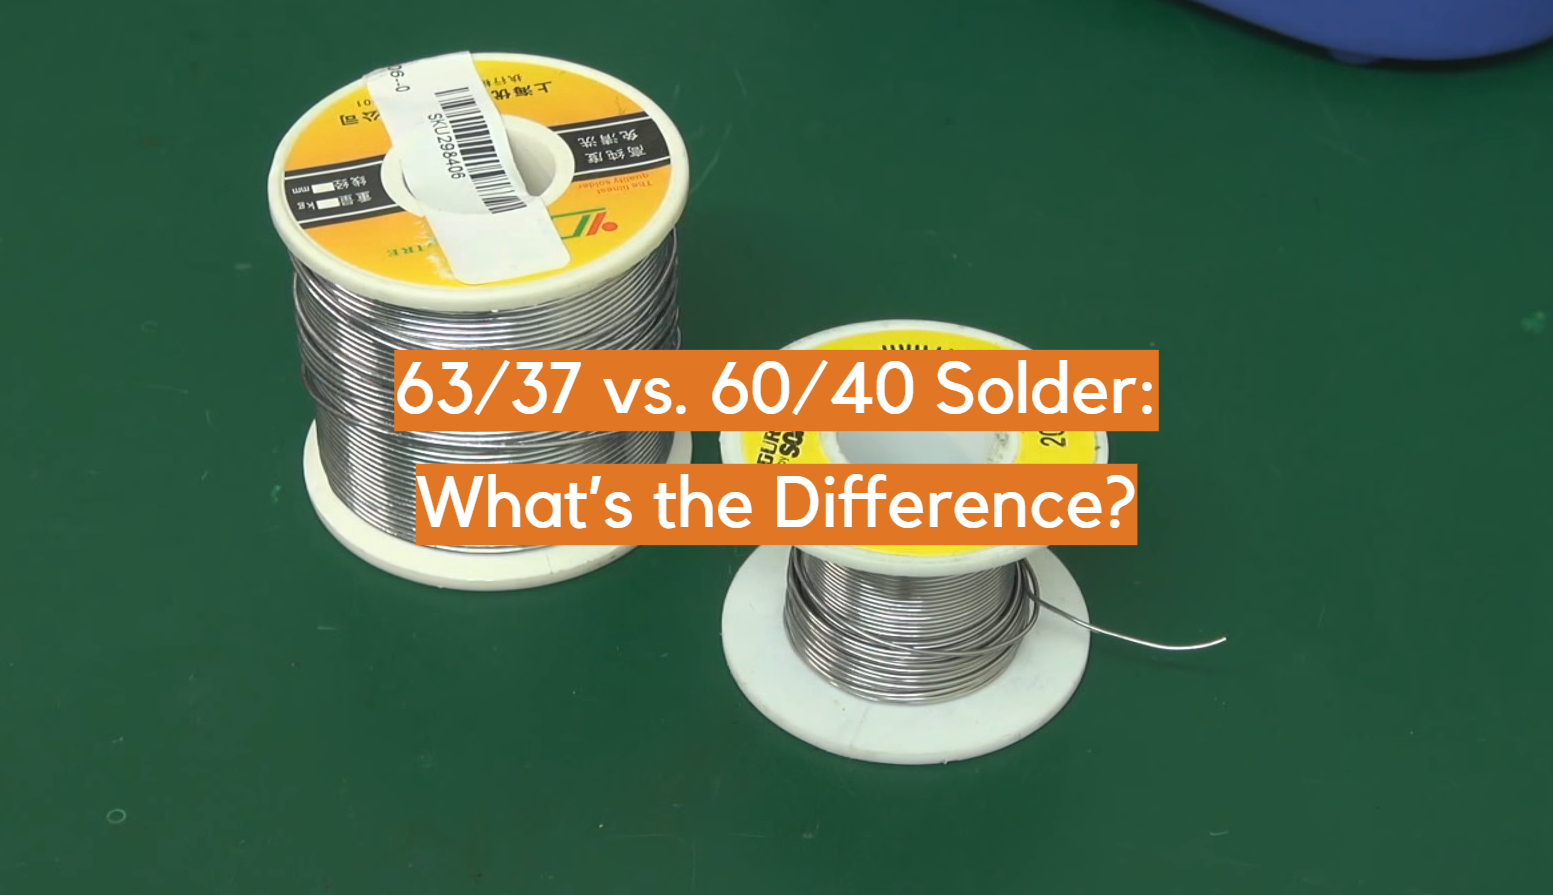 Soldadura 63/37 versus 60/40: ¿Cuál es la diferencia?